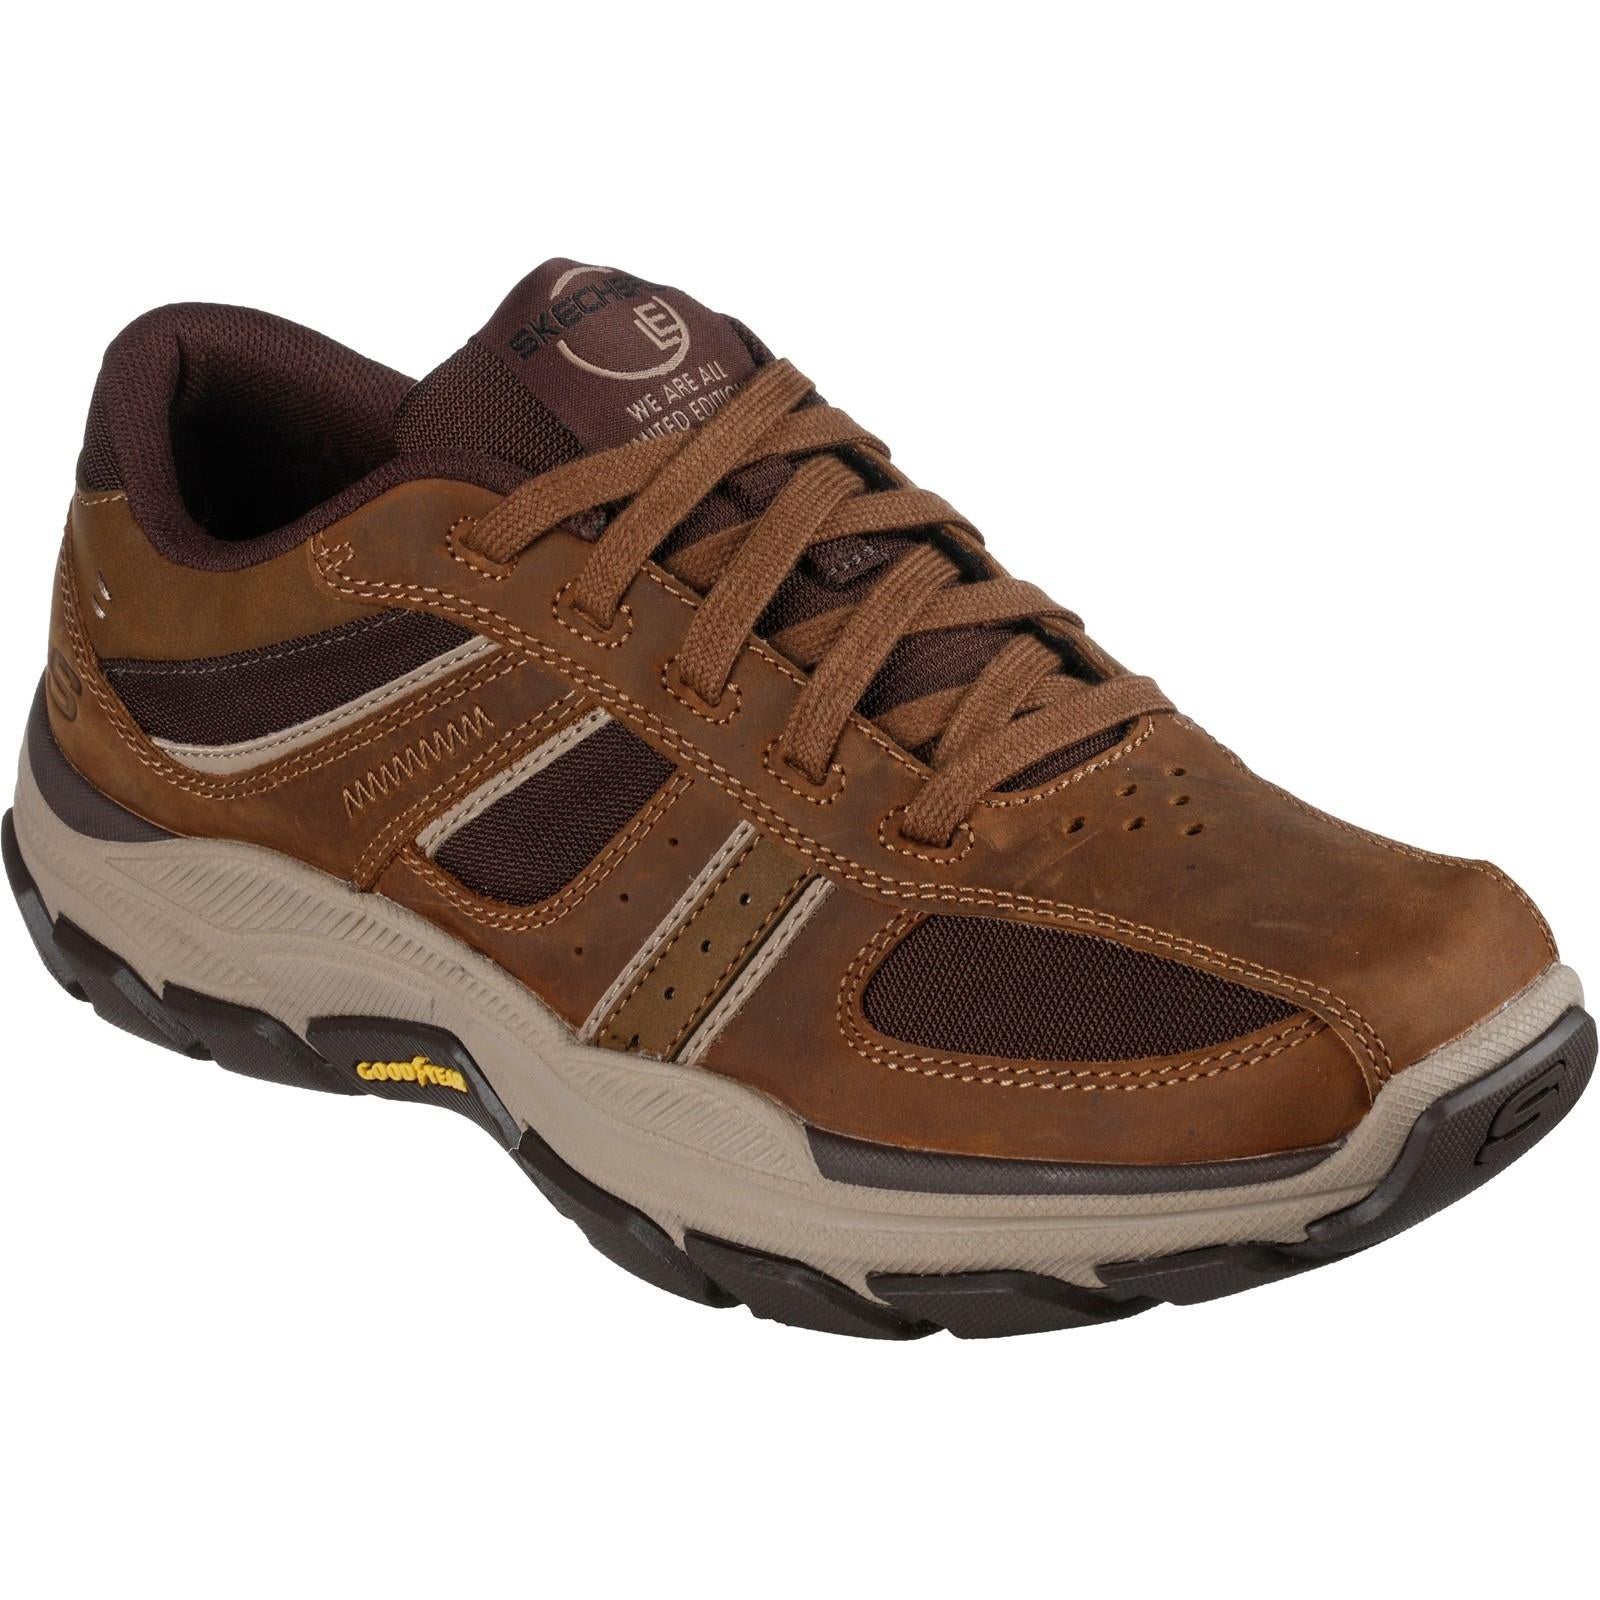 Skechers Respected Edgemere desert brown leather memory-foam shoe #SK204330